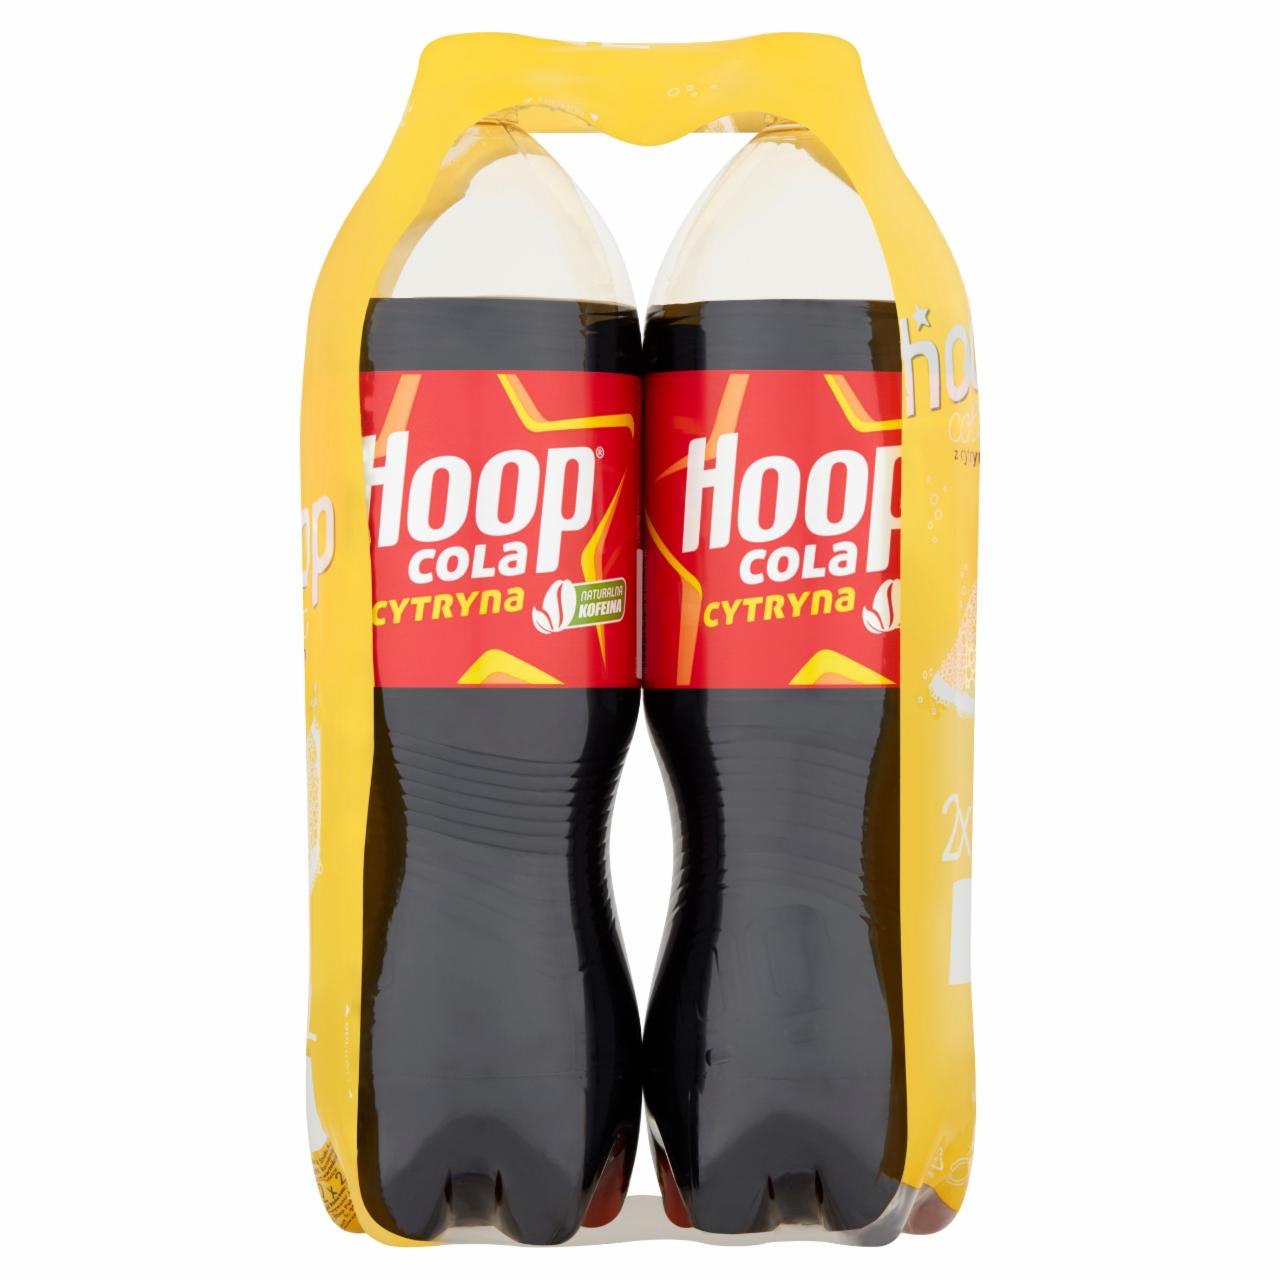 Zdjęcia - Hoop Napój gazowany cola cytryna 2 x 2 l